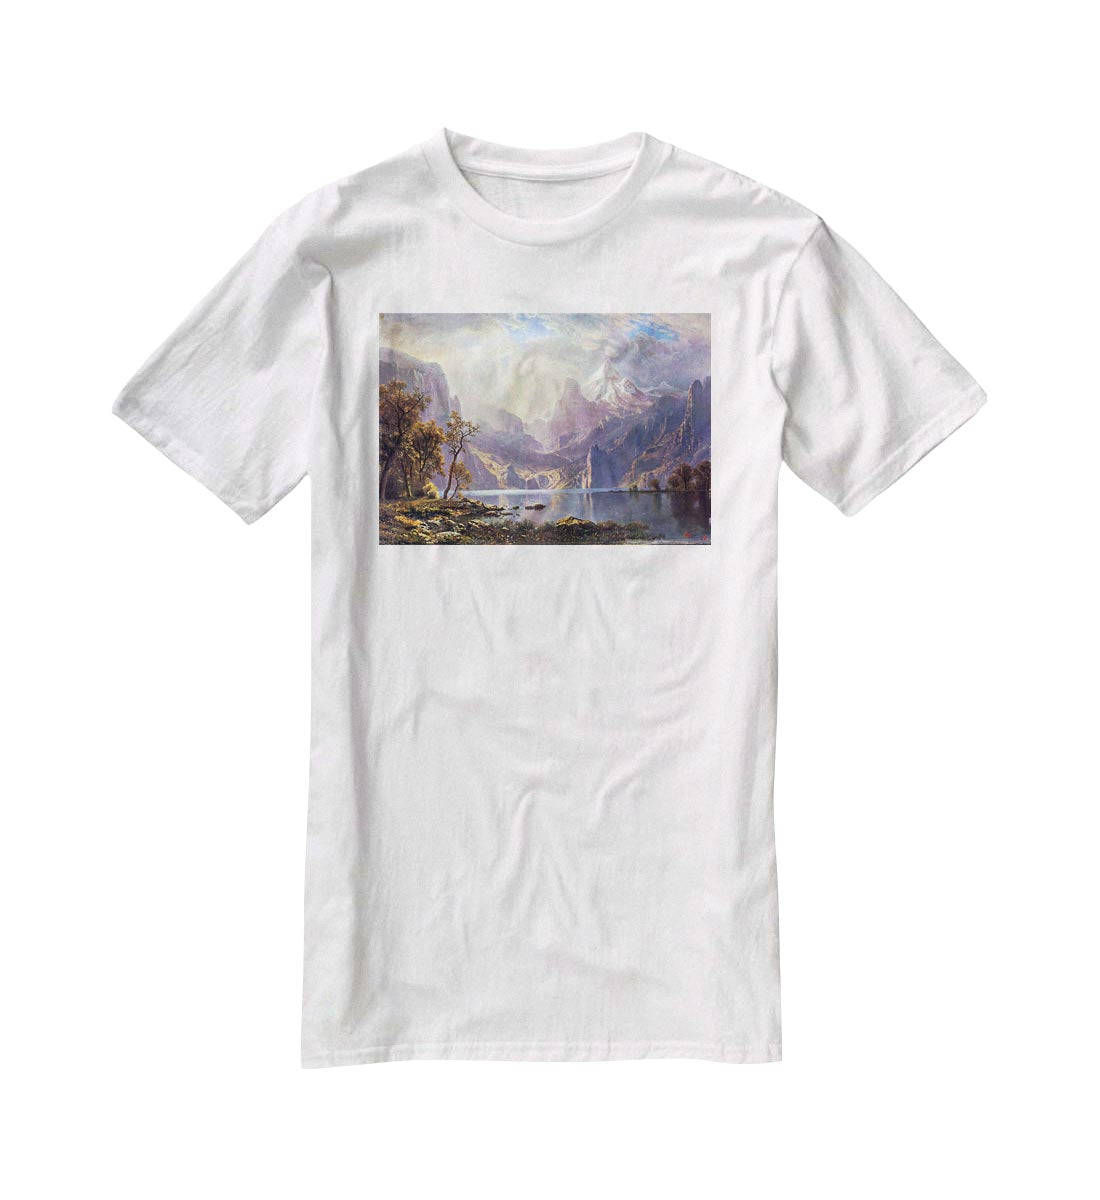 Lake Tahoe by Bierstadt T-Shirt - Canvas Art Rocks - 5